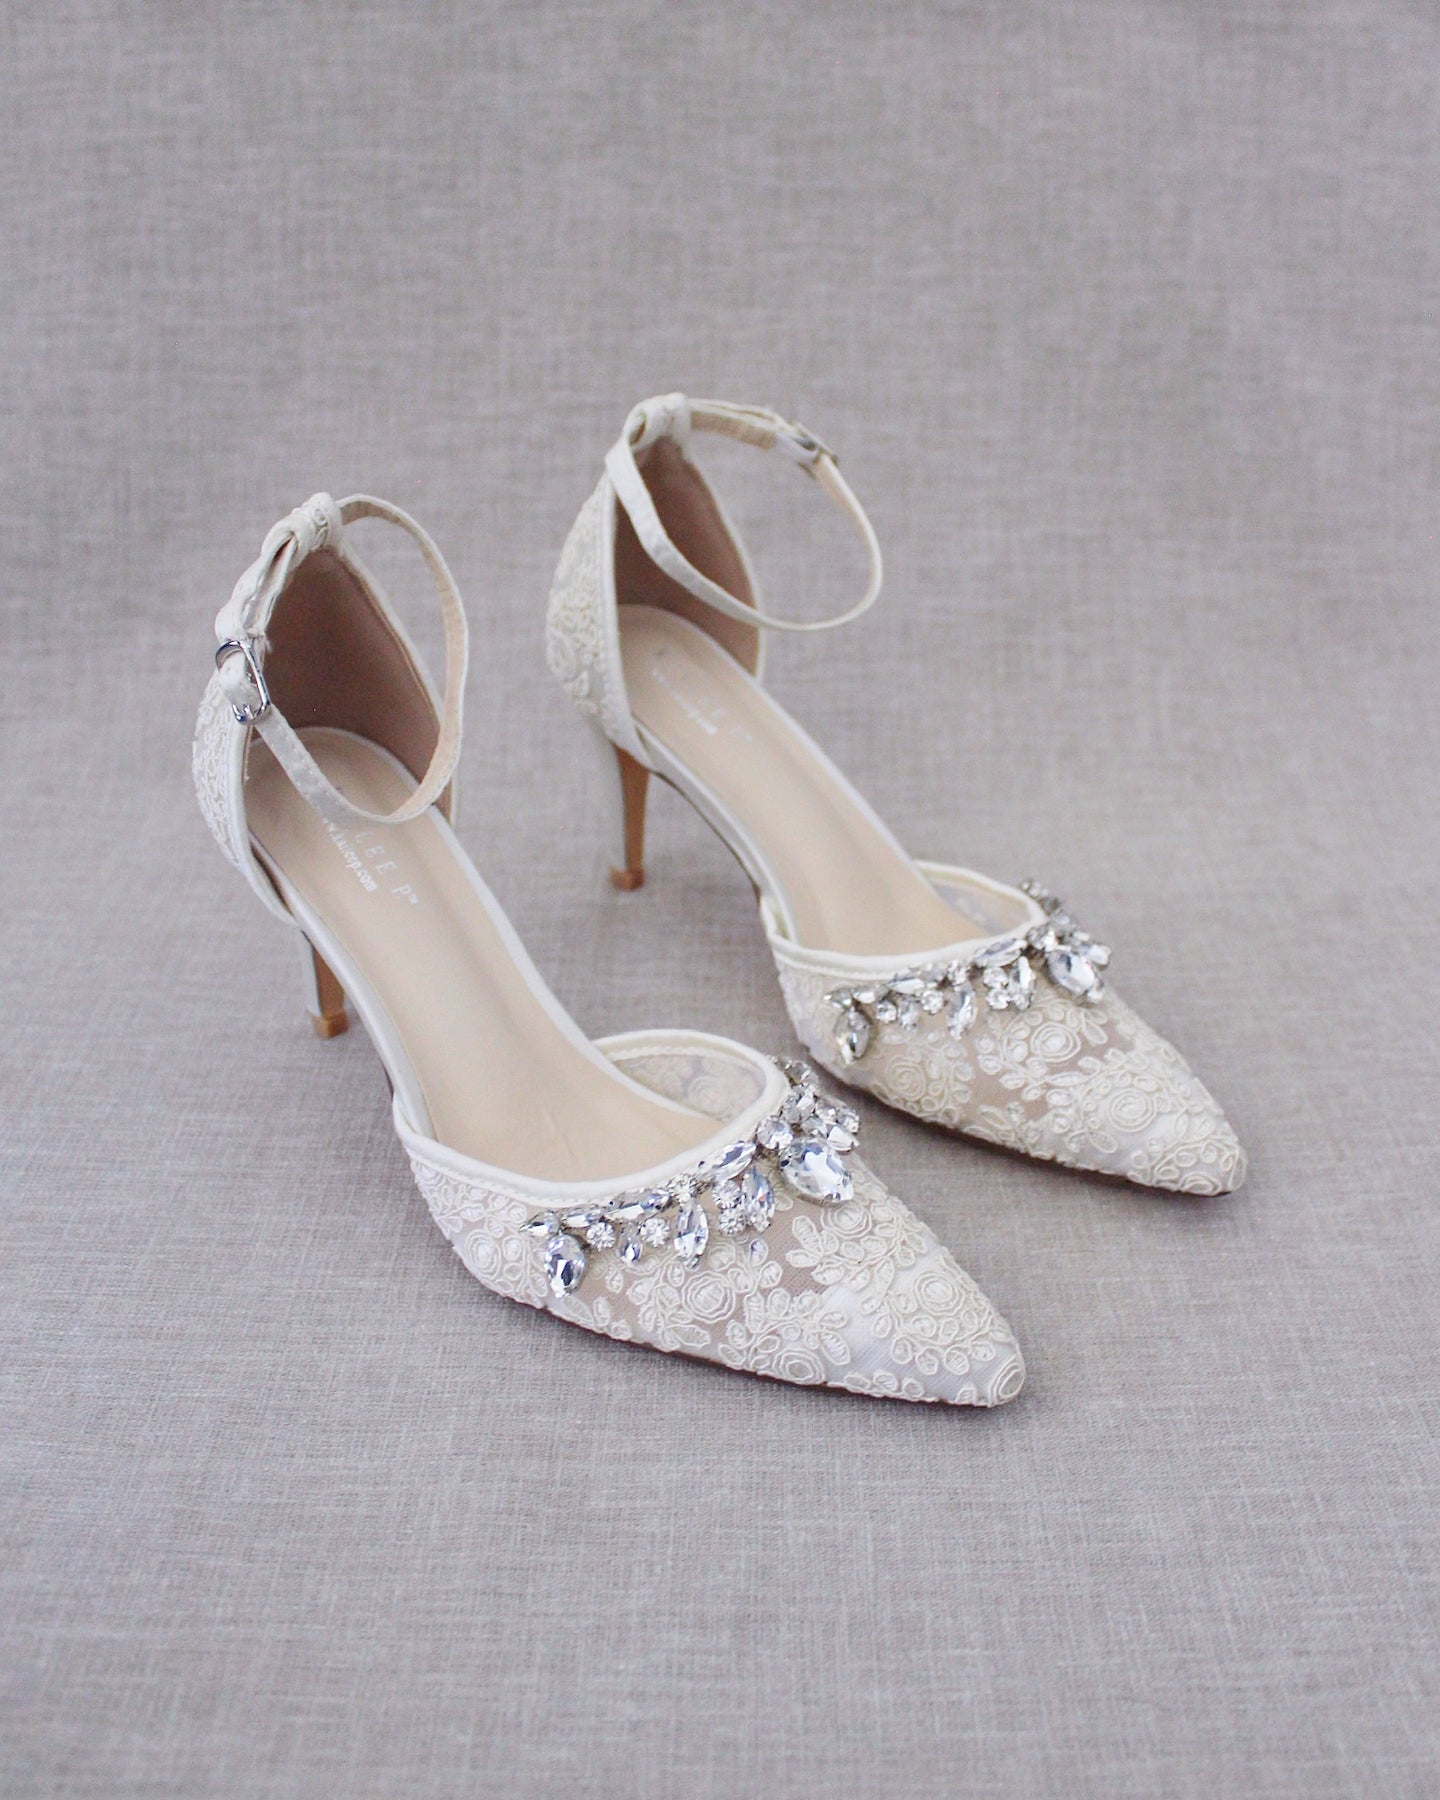 25 Gorgeous Embellished Wedding Shoes Ideas | HappyWedd.com #weddingshoes |  Mezuniyet balosu ayakkabıları, Geli̇n ayakkabisi, Gelin ayakkabıları